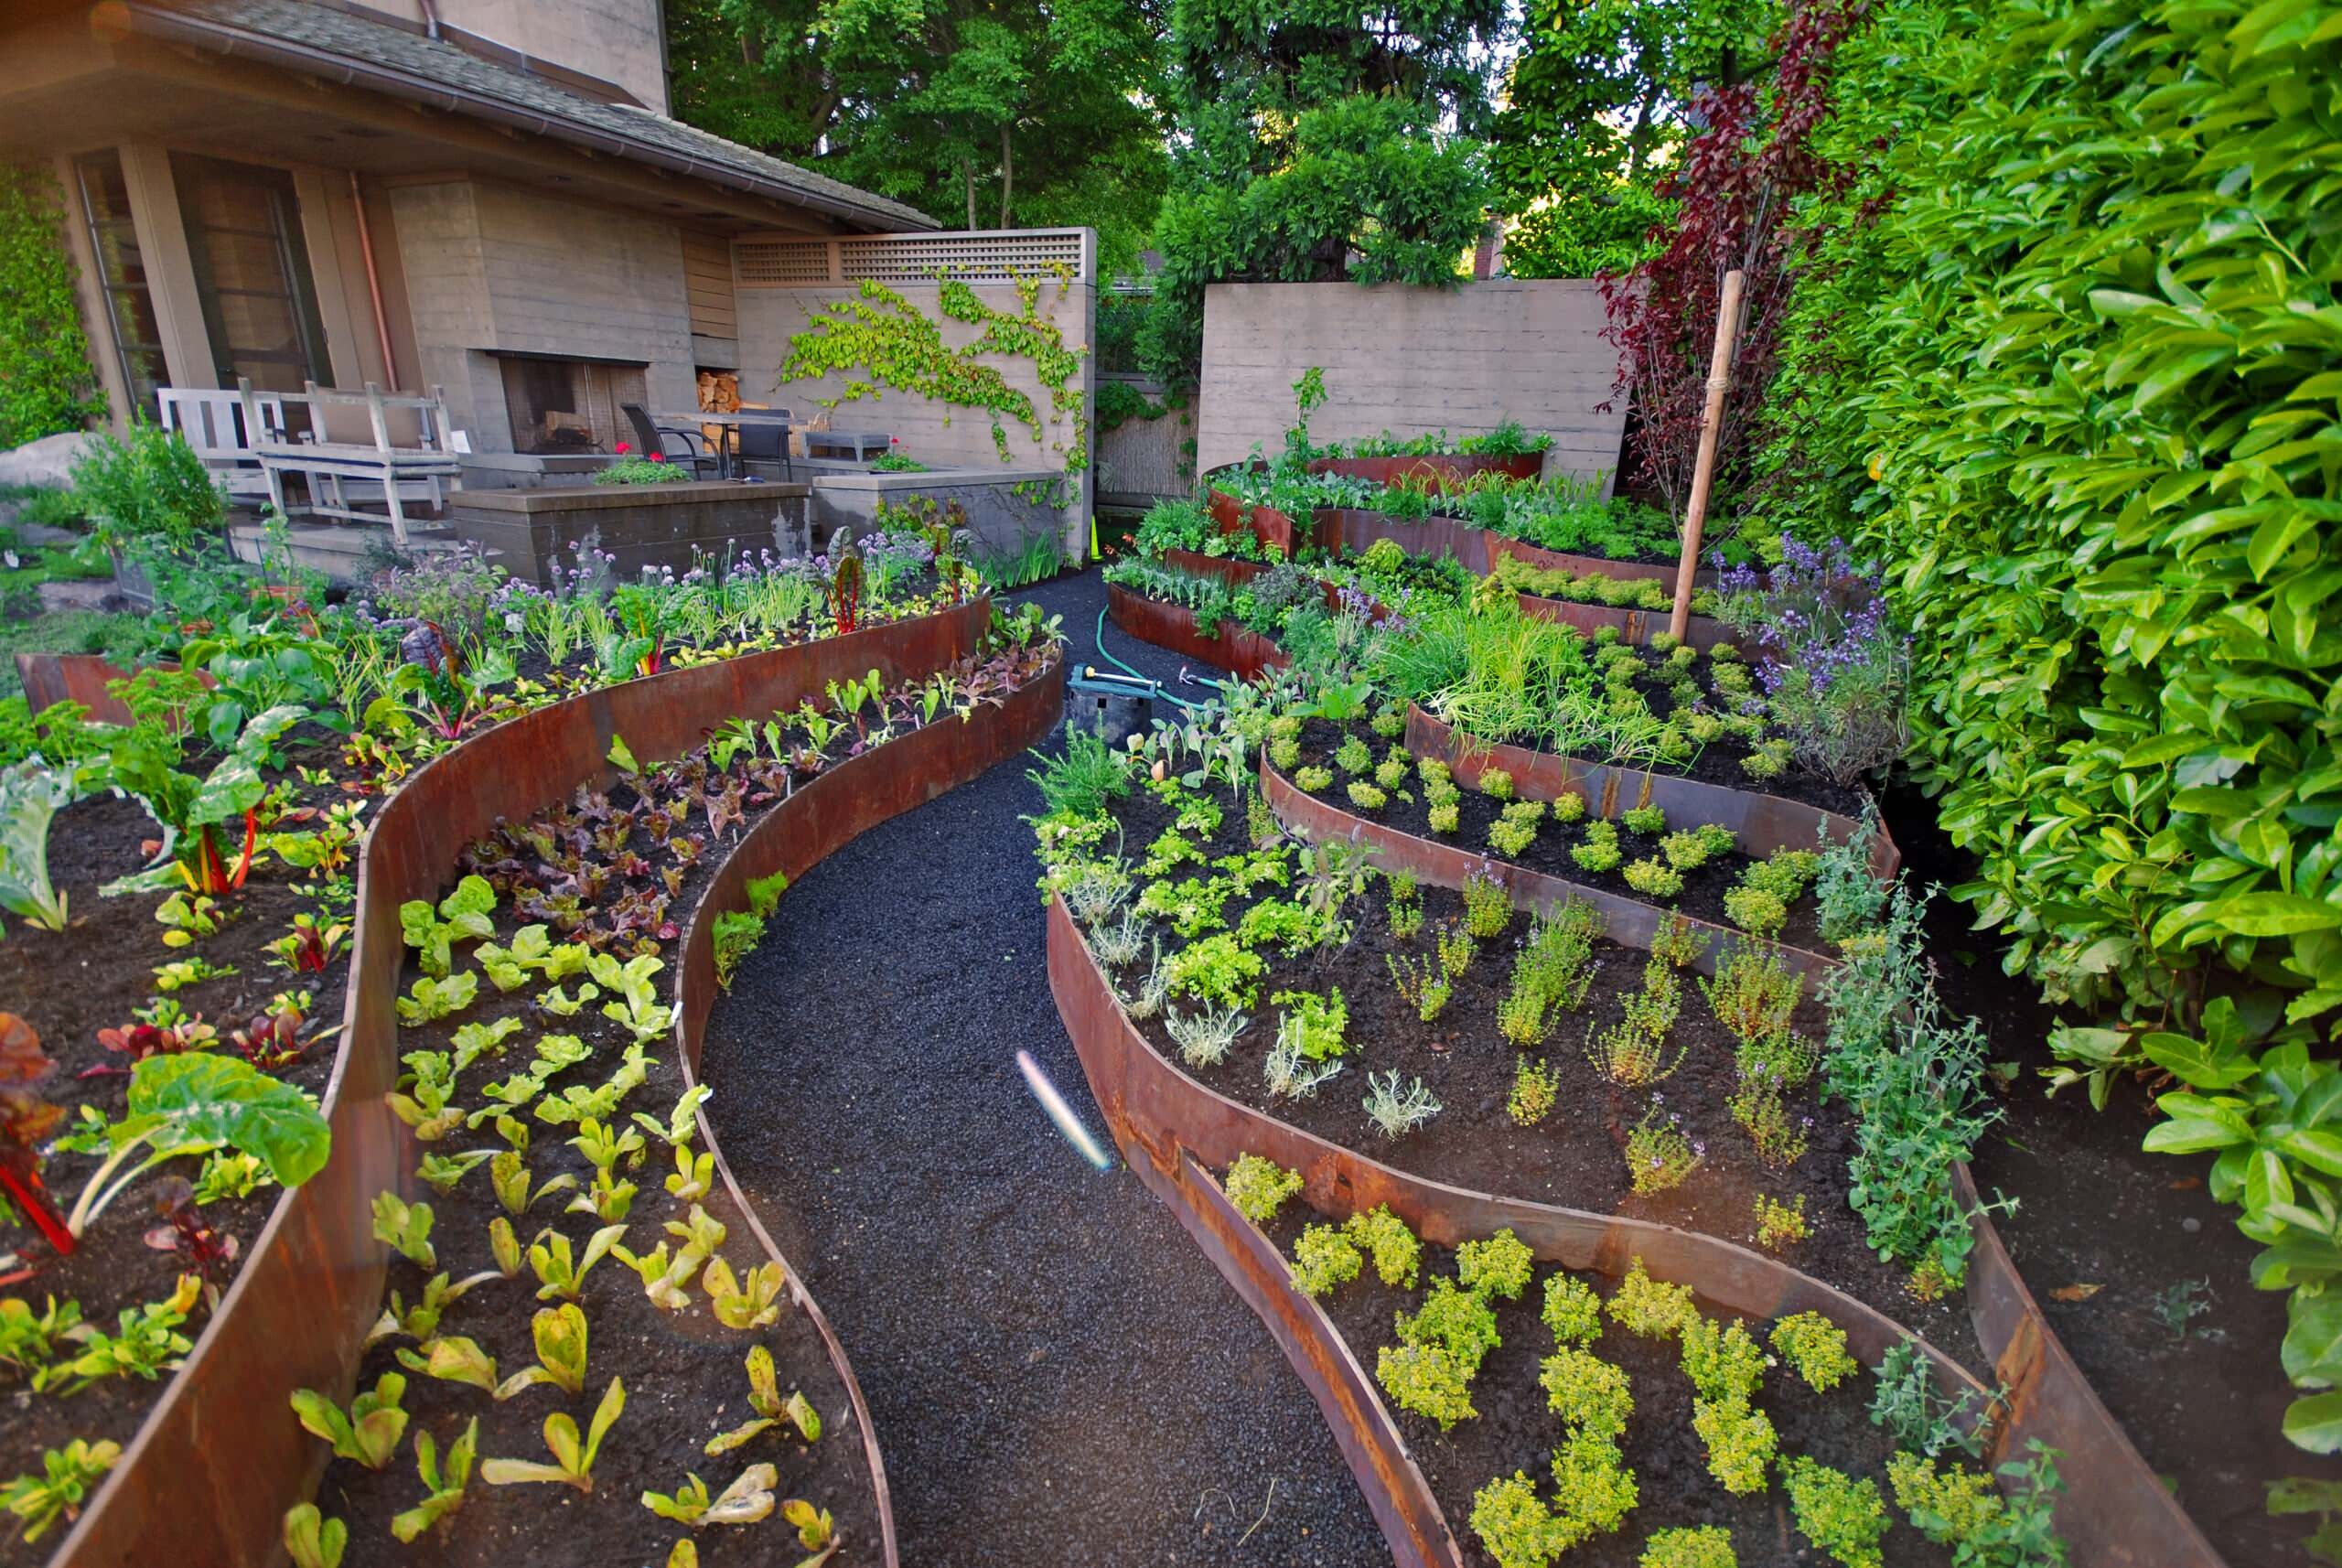 Как создать красивые грядки в огороде: советы и идеи ландшафтного дизайна